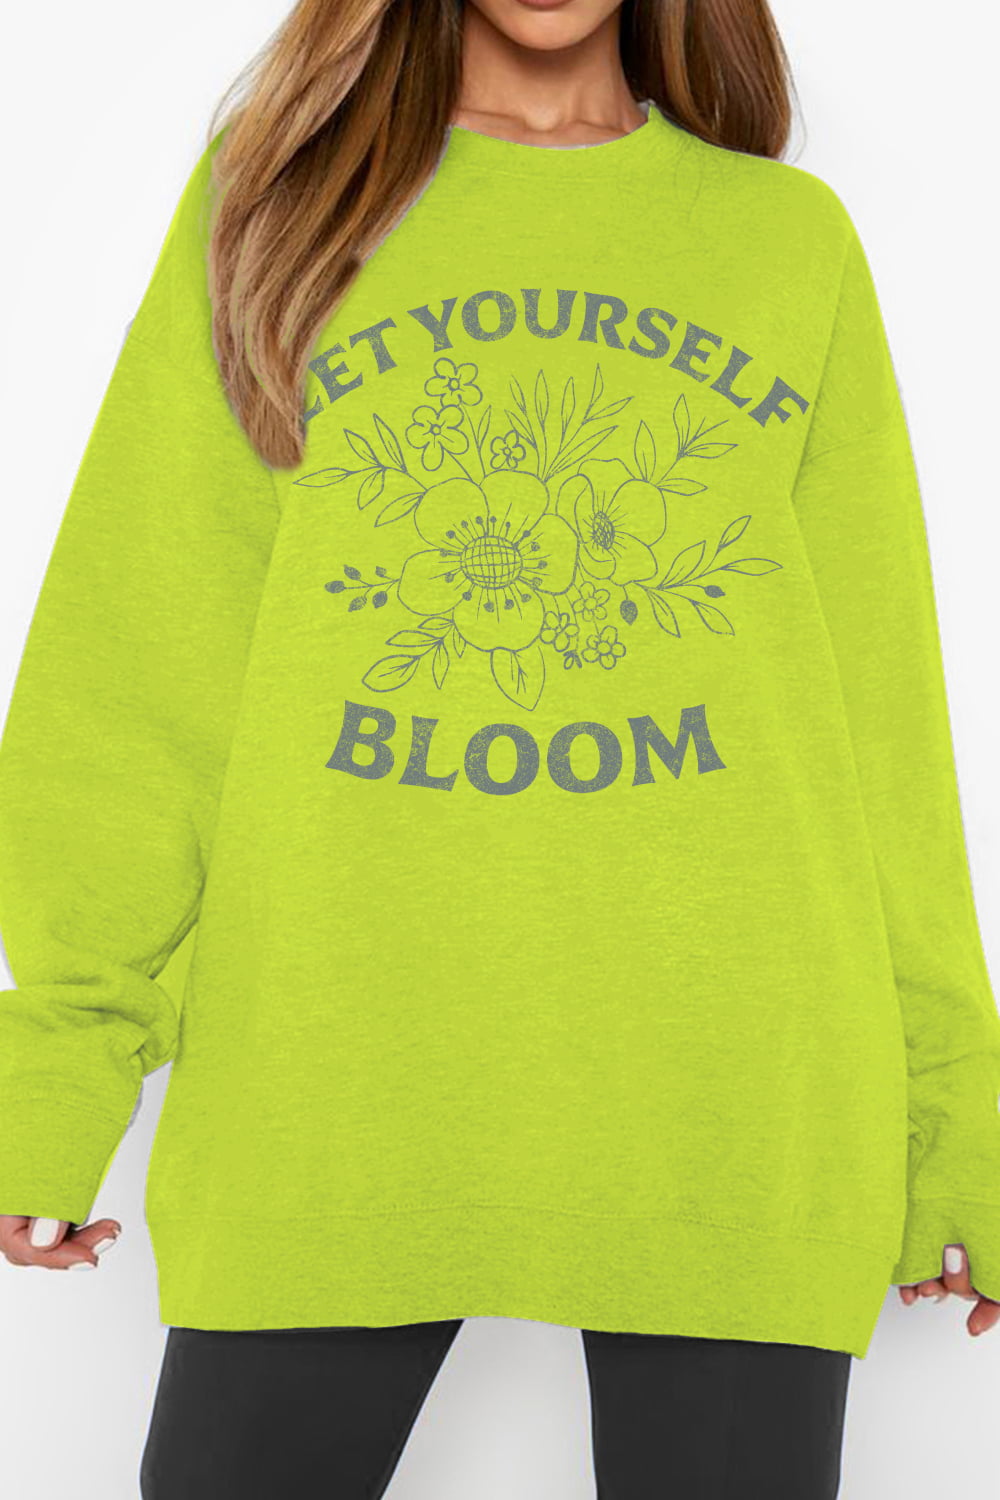 LET YOURSELF BLOOM Sweatshirt | AdoreStarr